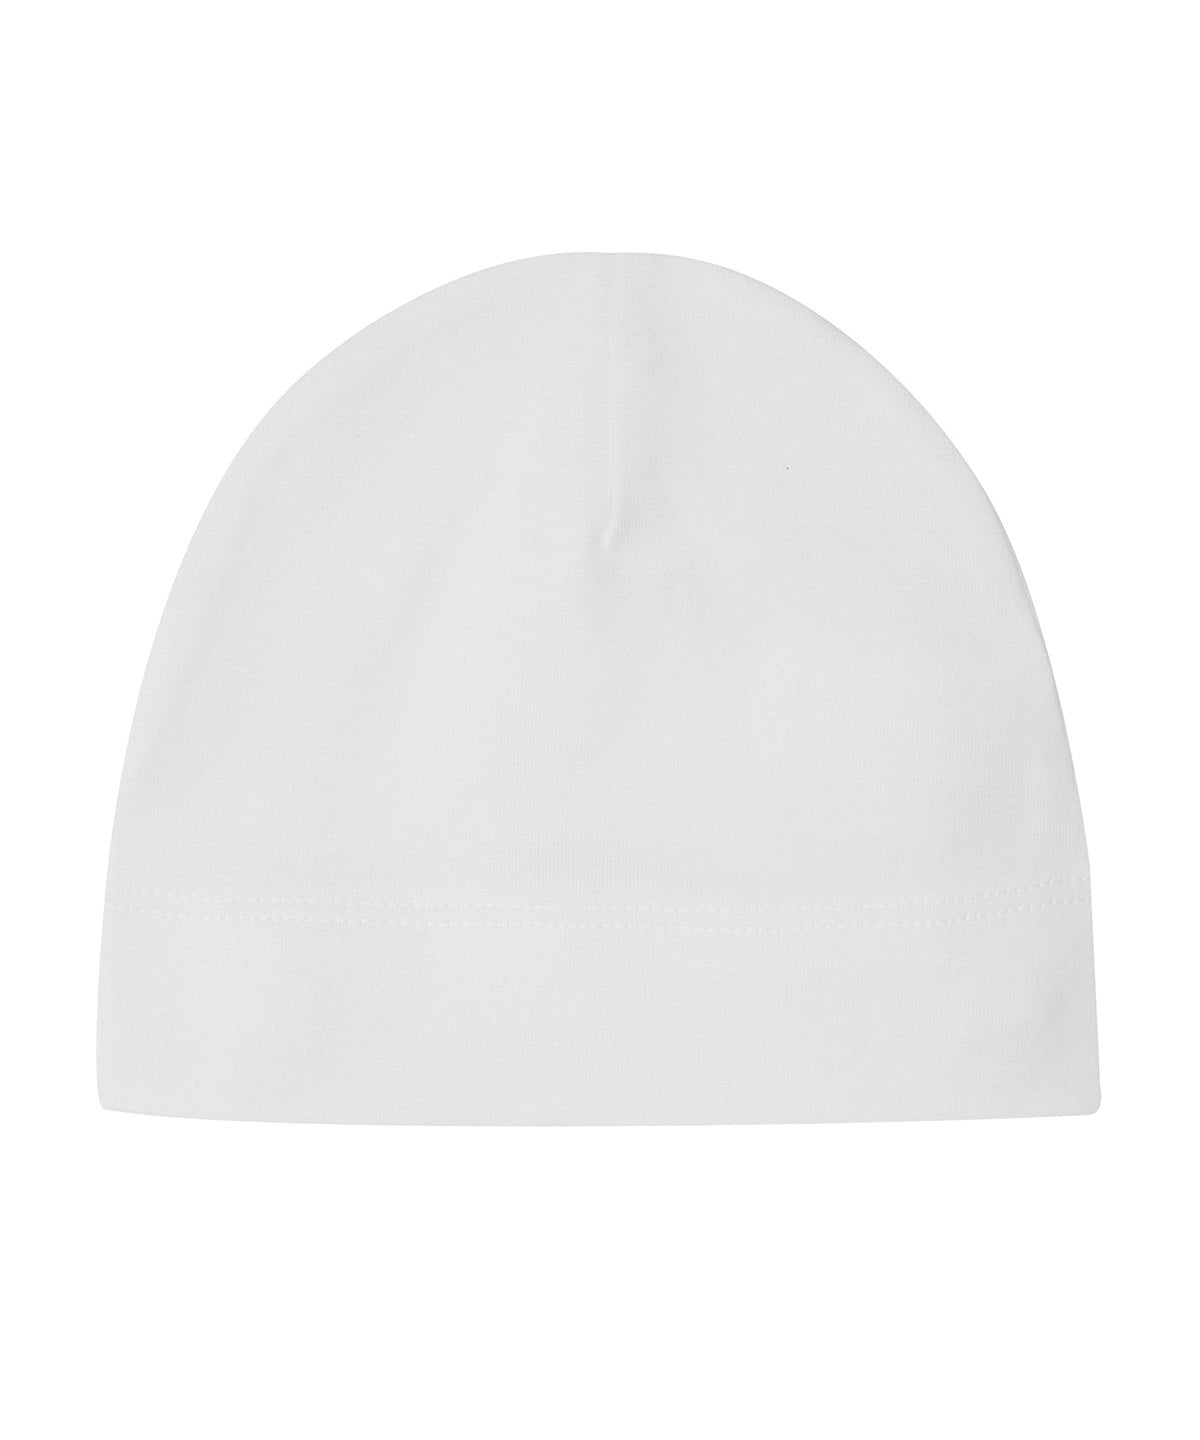 Personalised Hats - White Babybugz Baby hat